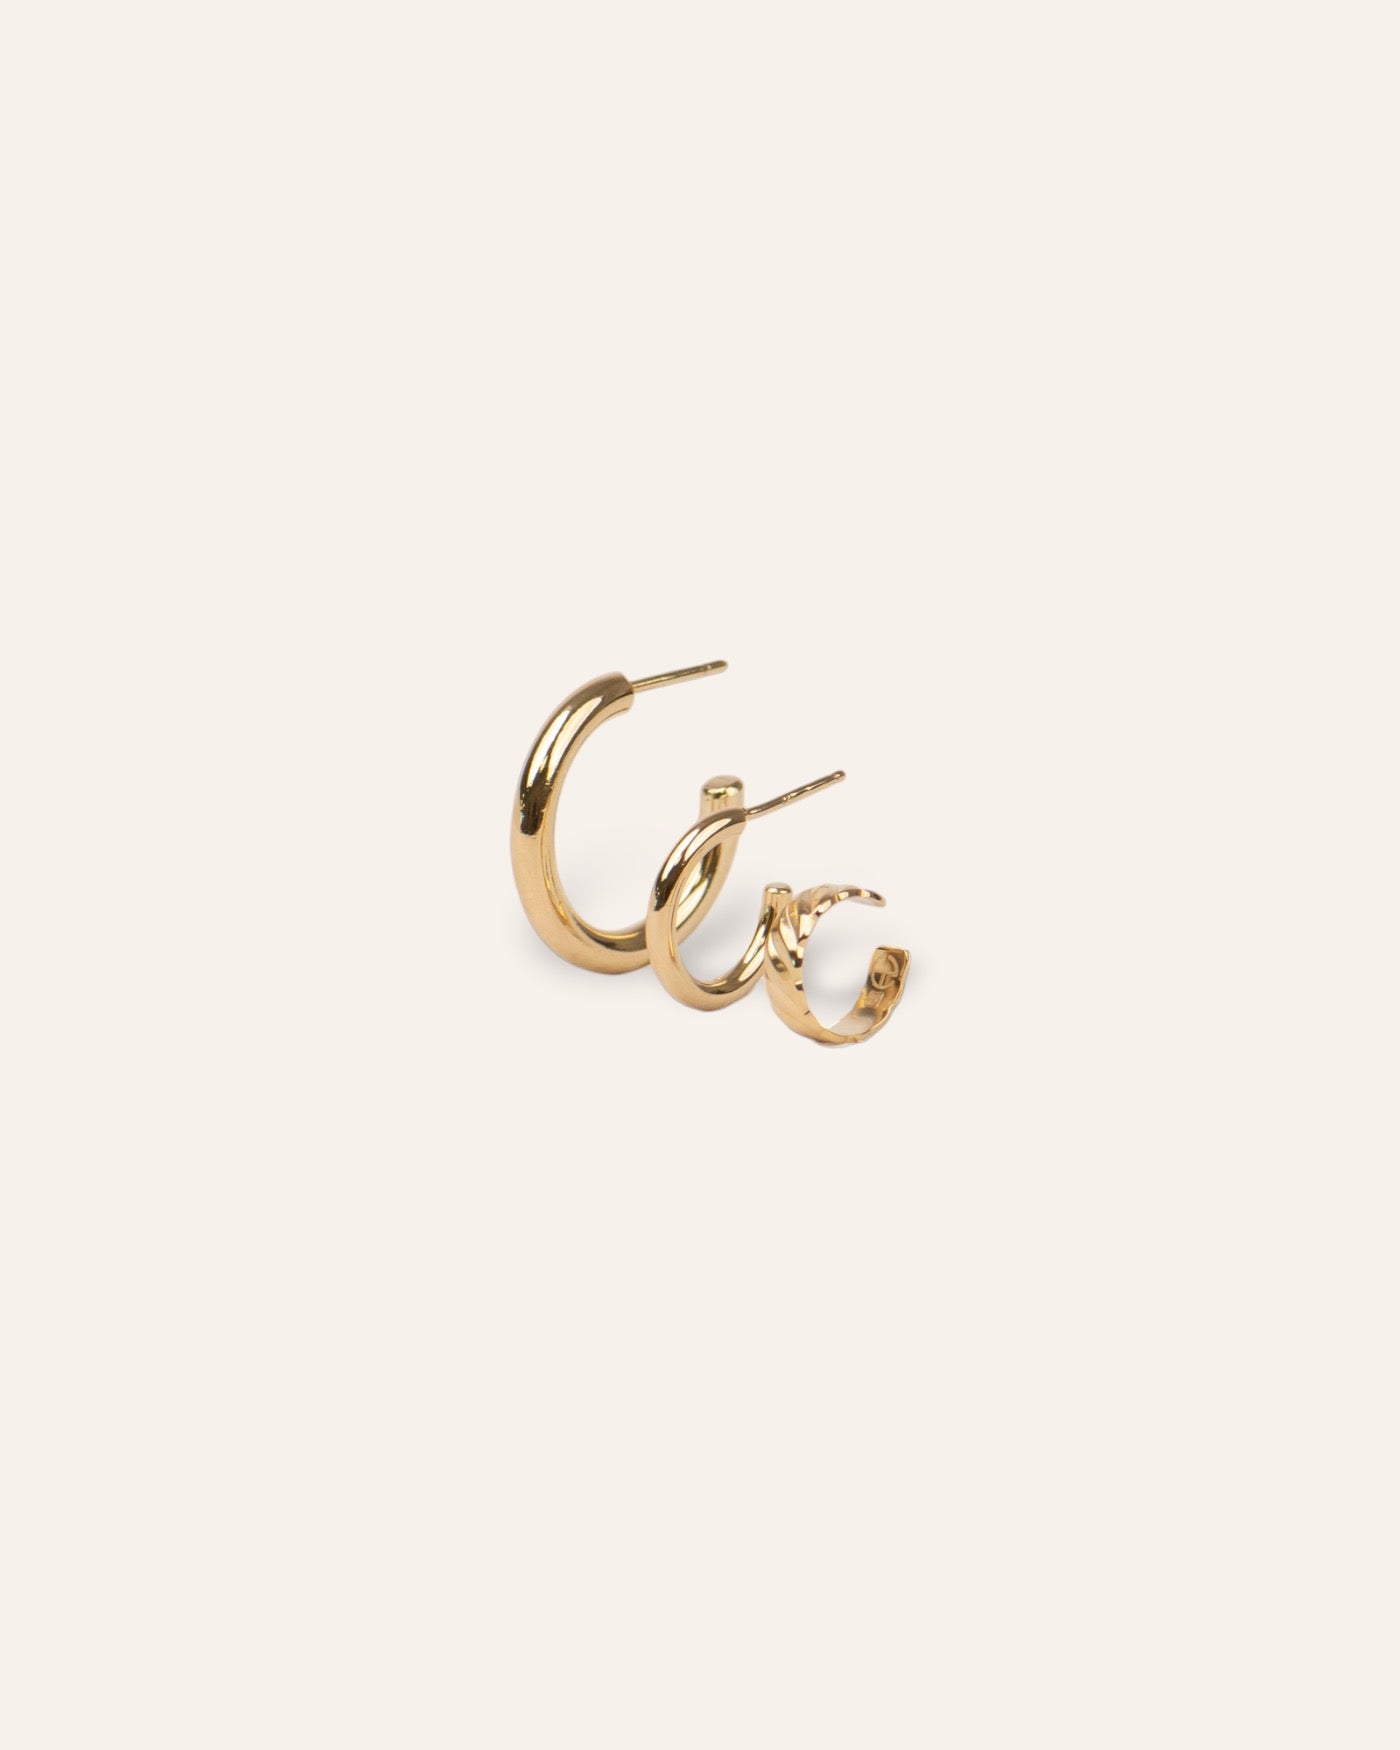 Composition de trois boucles d'oreilles, avec une petite créole en anneau lisse, une mini créole en anneau lisse, et un earcuff au motif wavy en plaqué or 18 carats made in France.